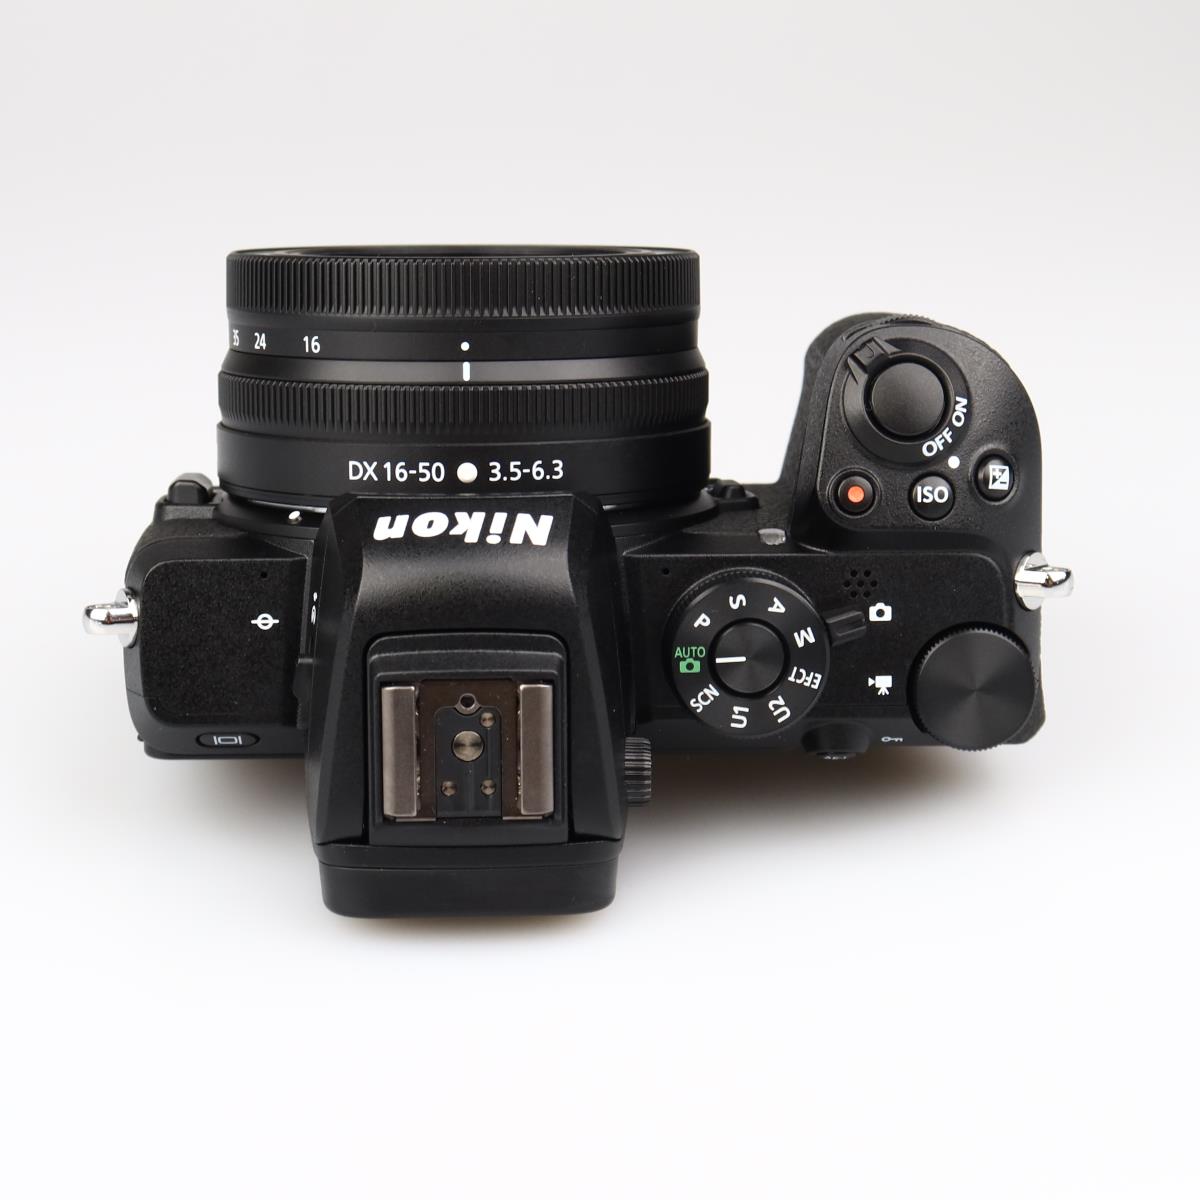 (Myyty) Nikon Z50 + 16-50mm VR Kit (SC: 2710) (Käytetty) (takuu)